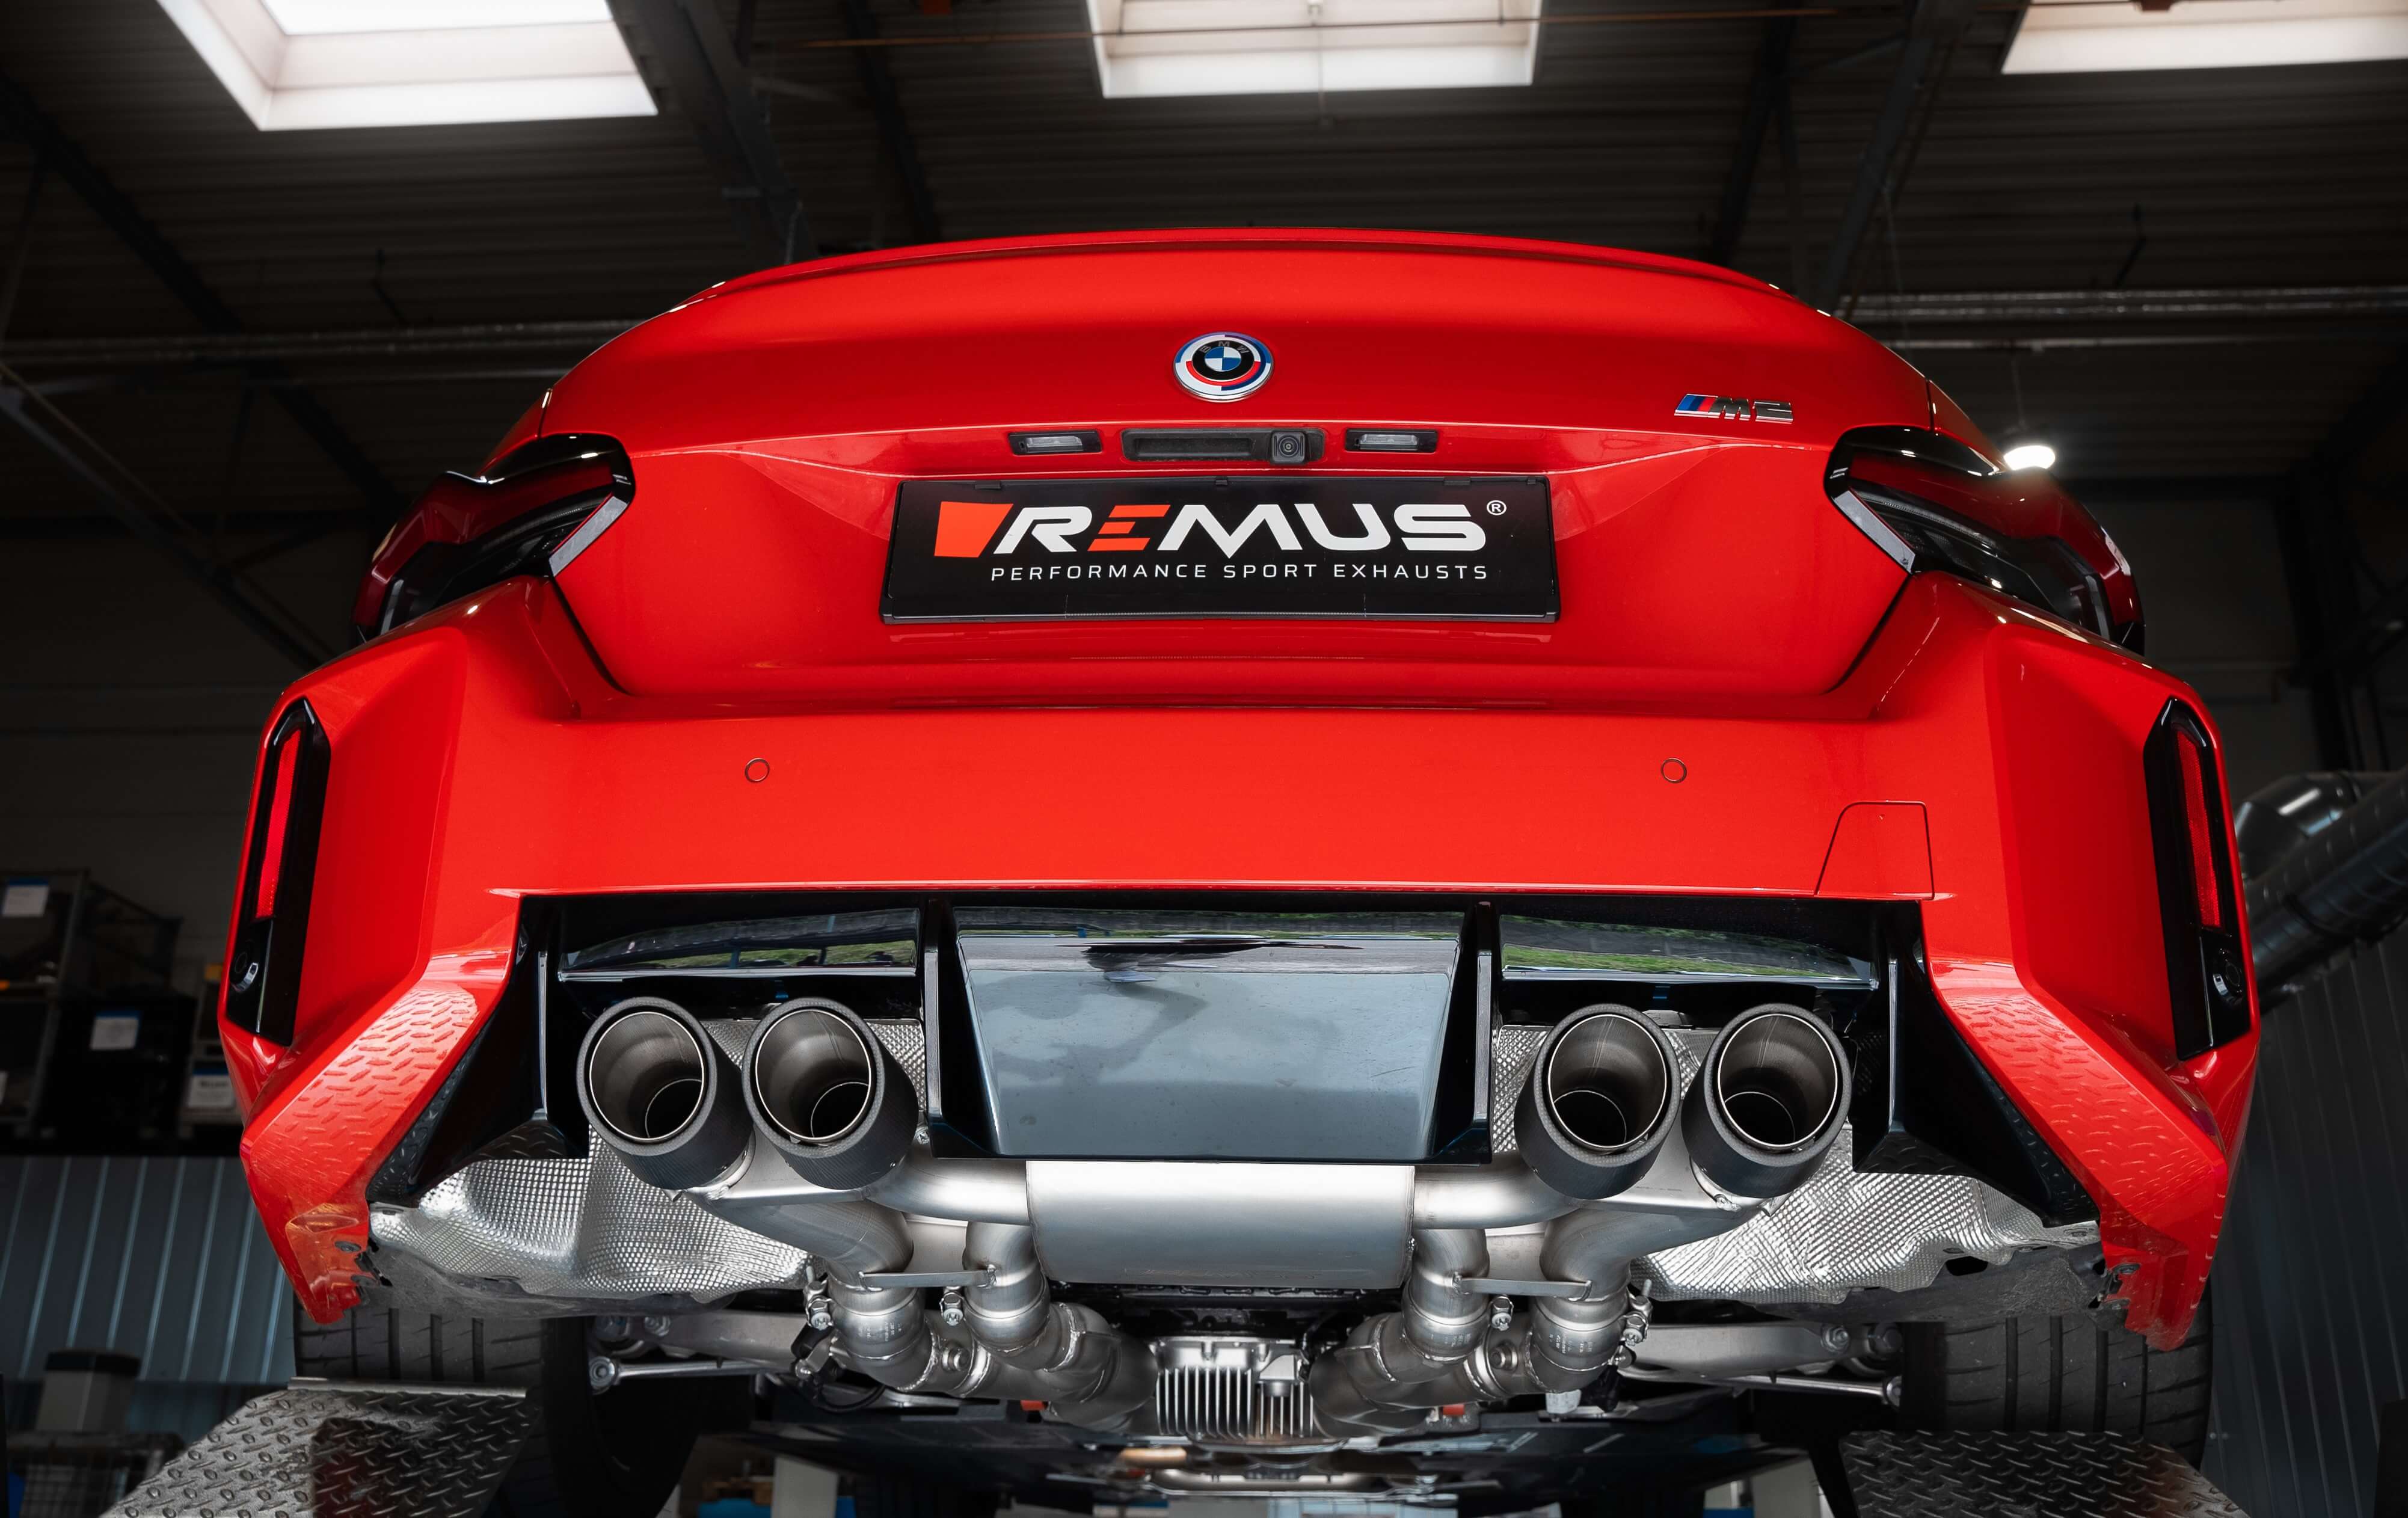 REMUS Sportauspuff BMW - Entdecke unsere besten Abgasanlagen für